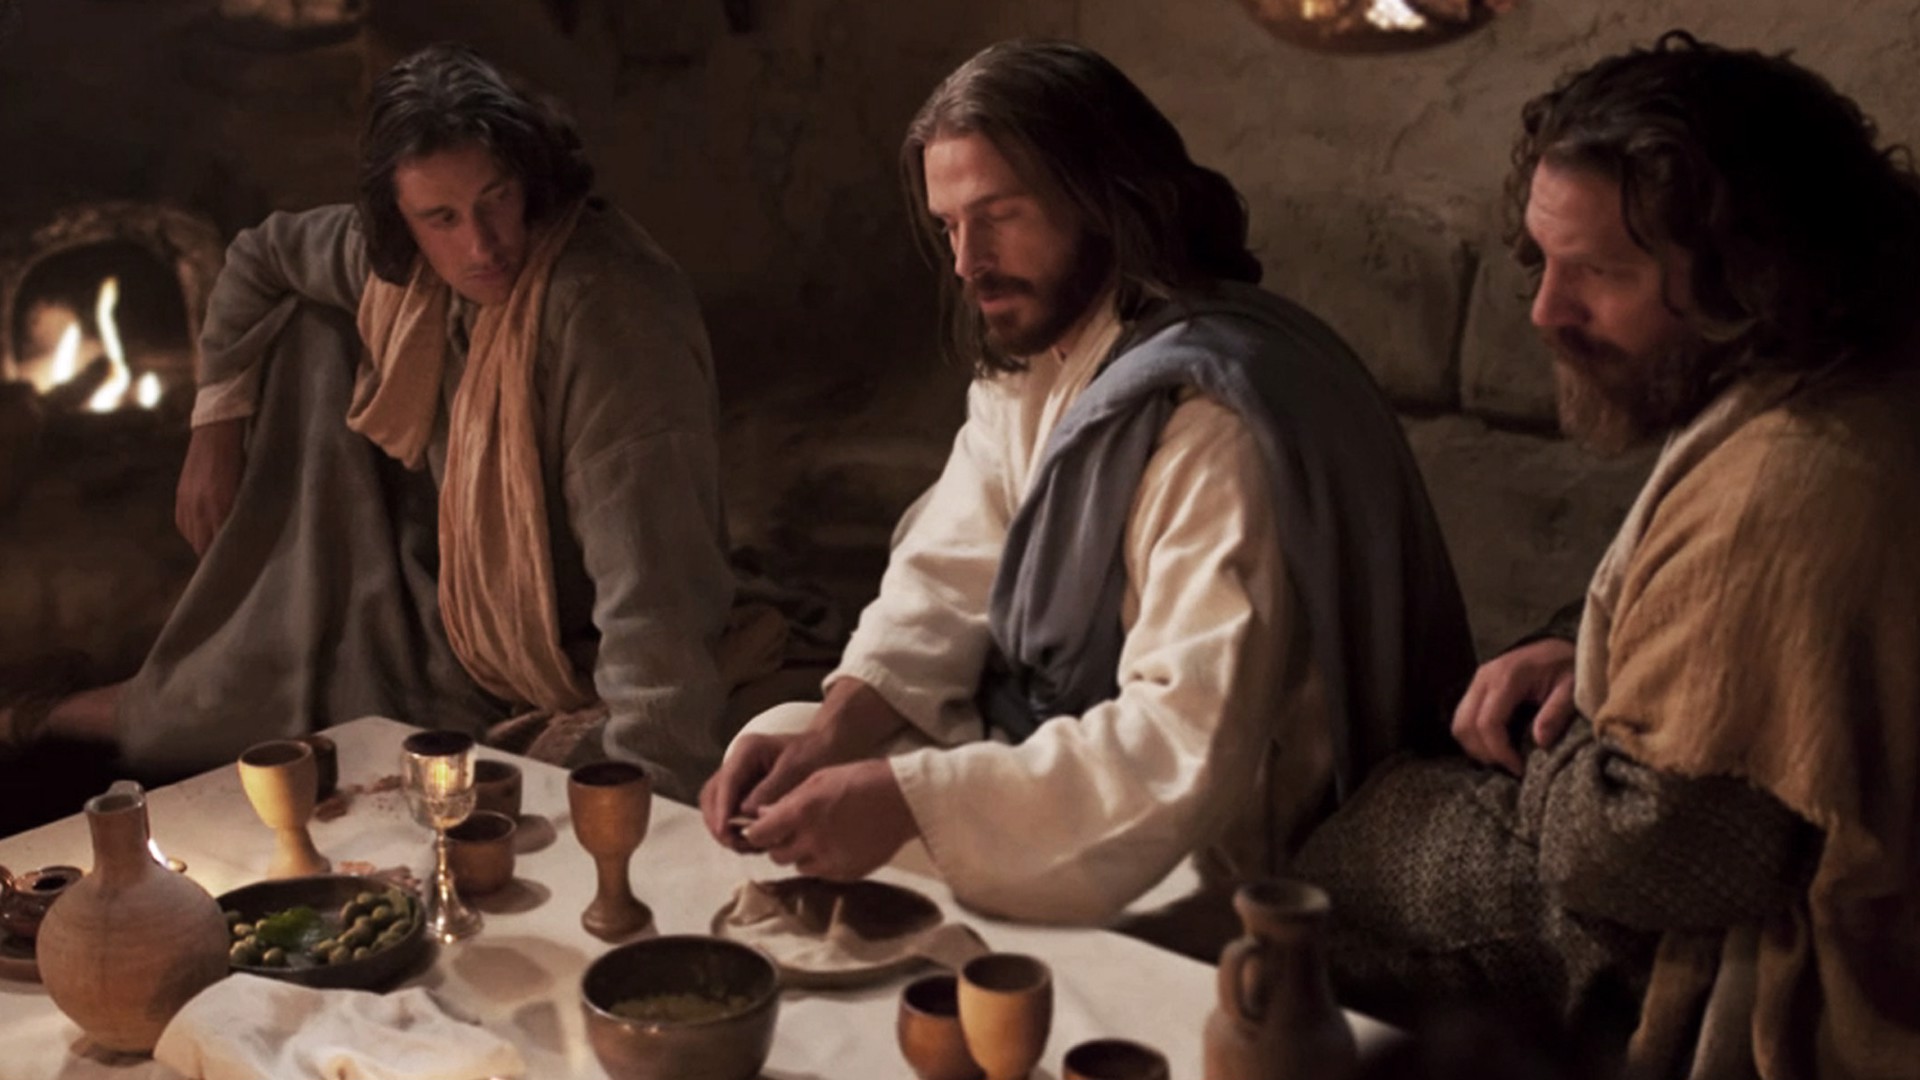 The Last Supper – Leonardo da Vinci